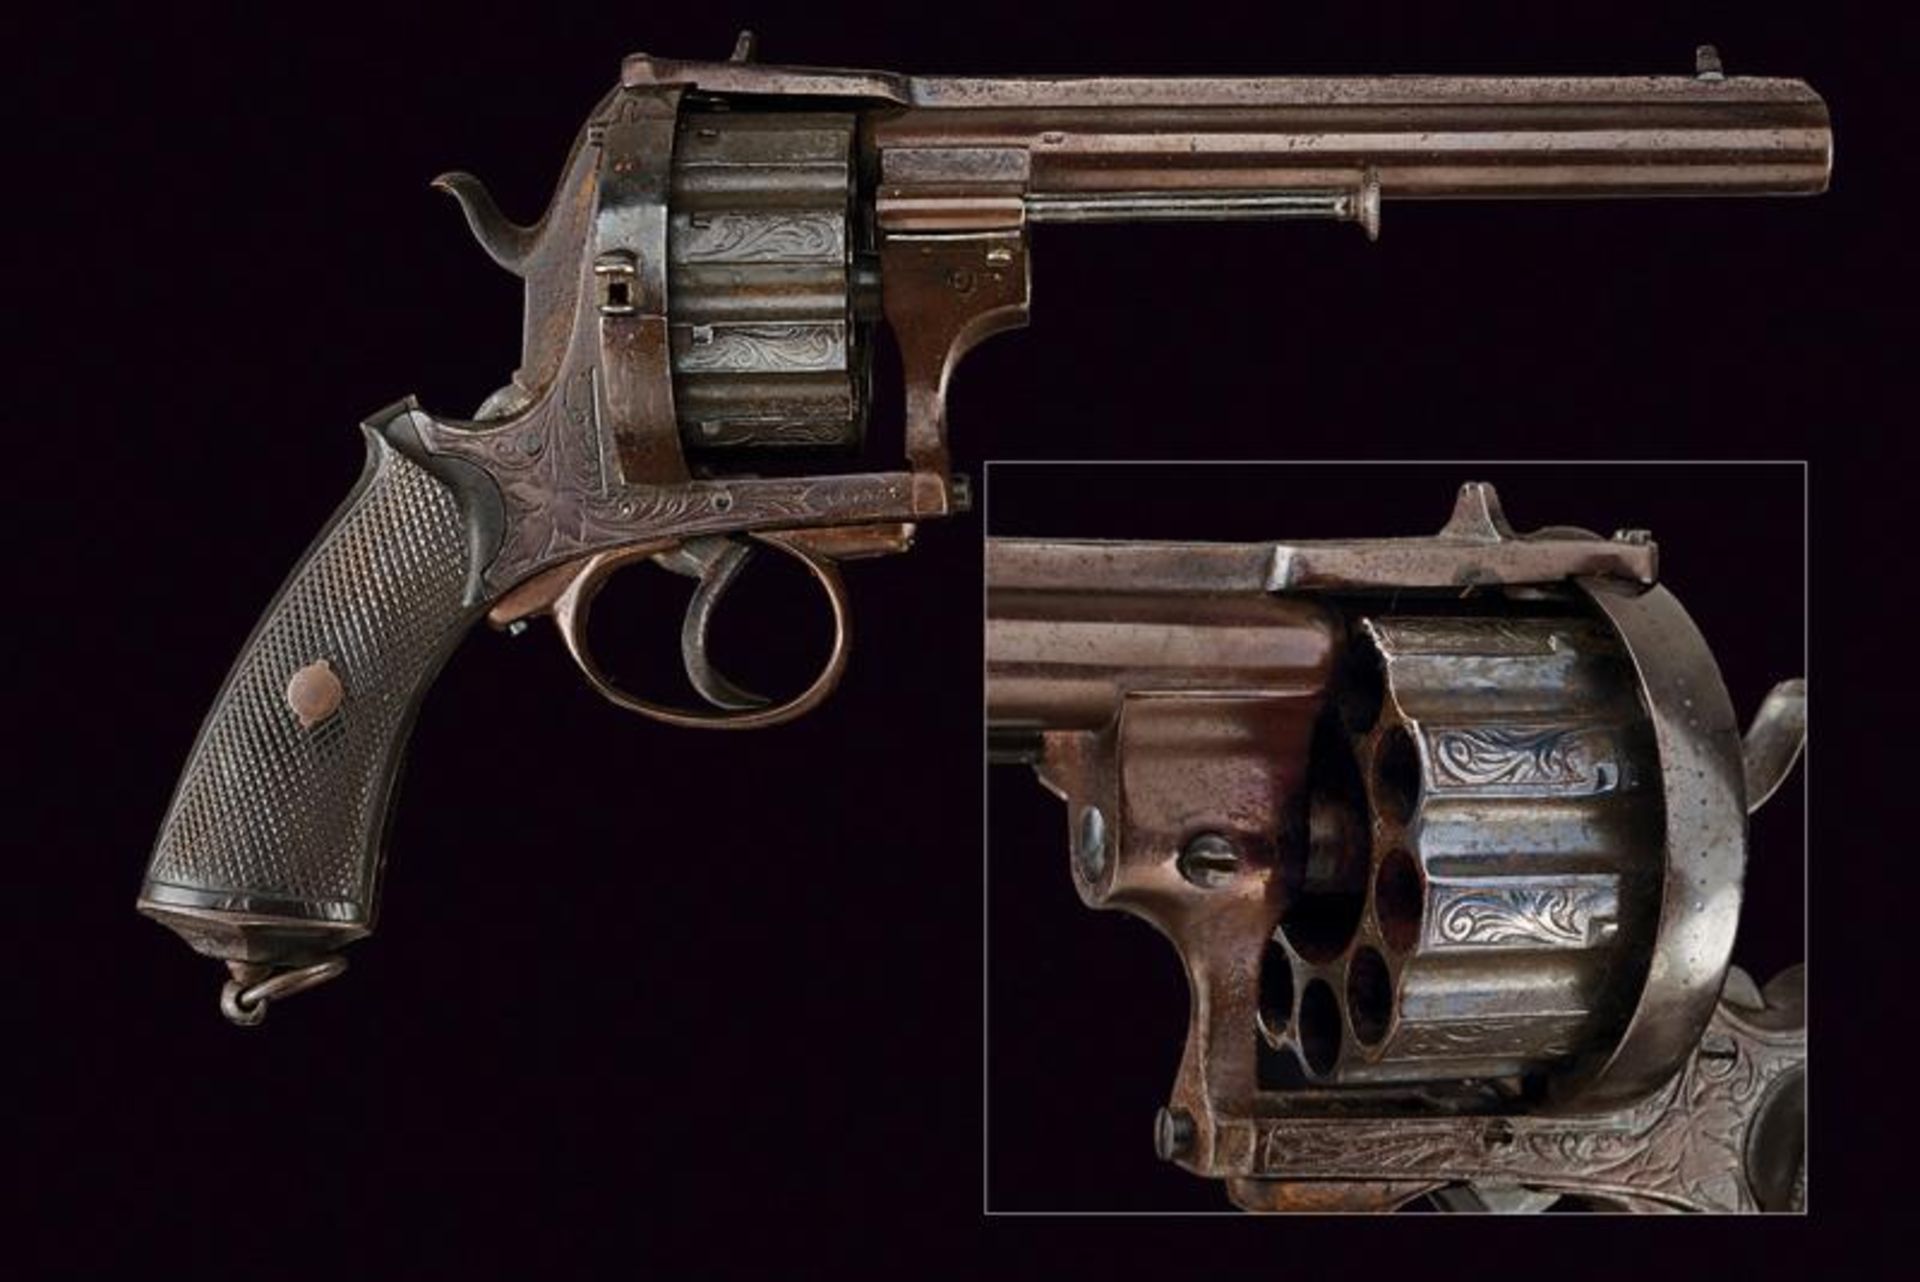 A rare ten-shot pin fire revolver